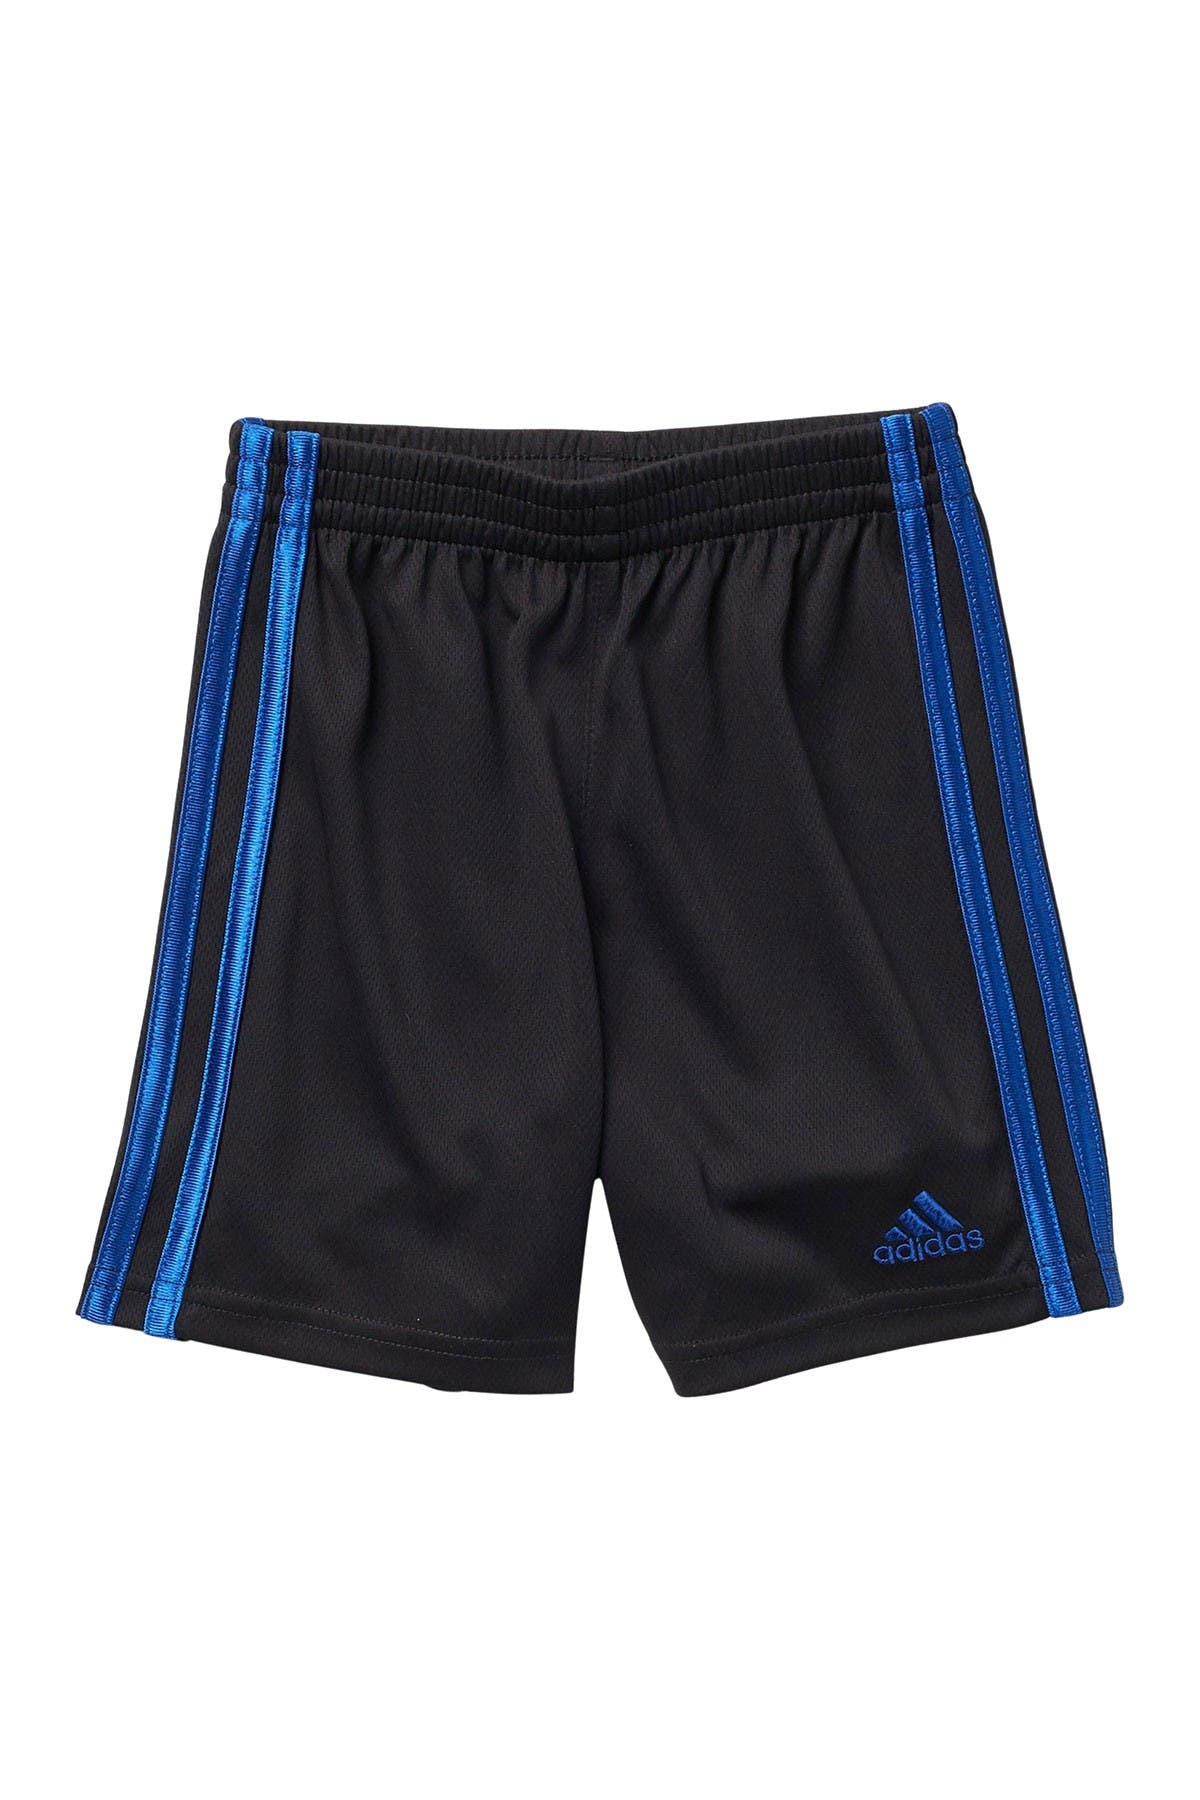 Adidas Originals Kids' 3 Stripe Mesh Shorts In Blk/blue